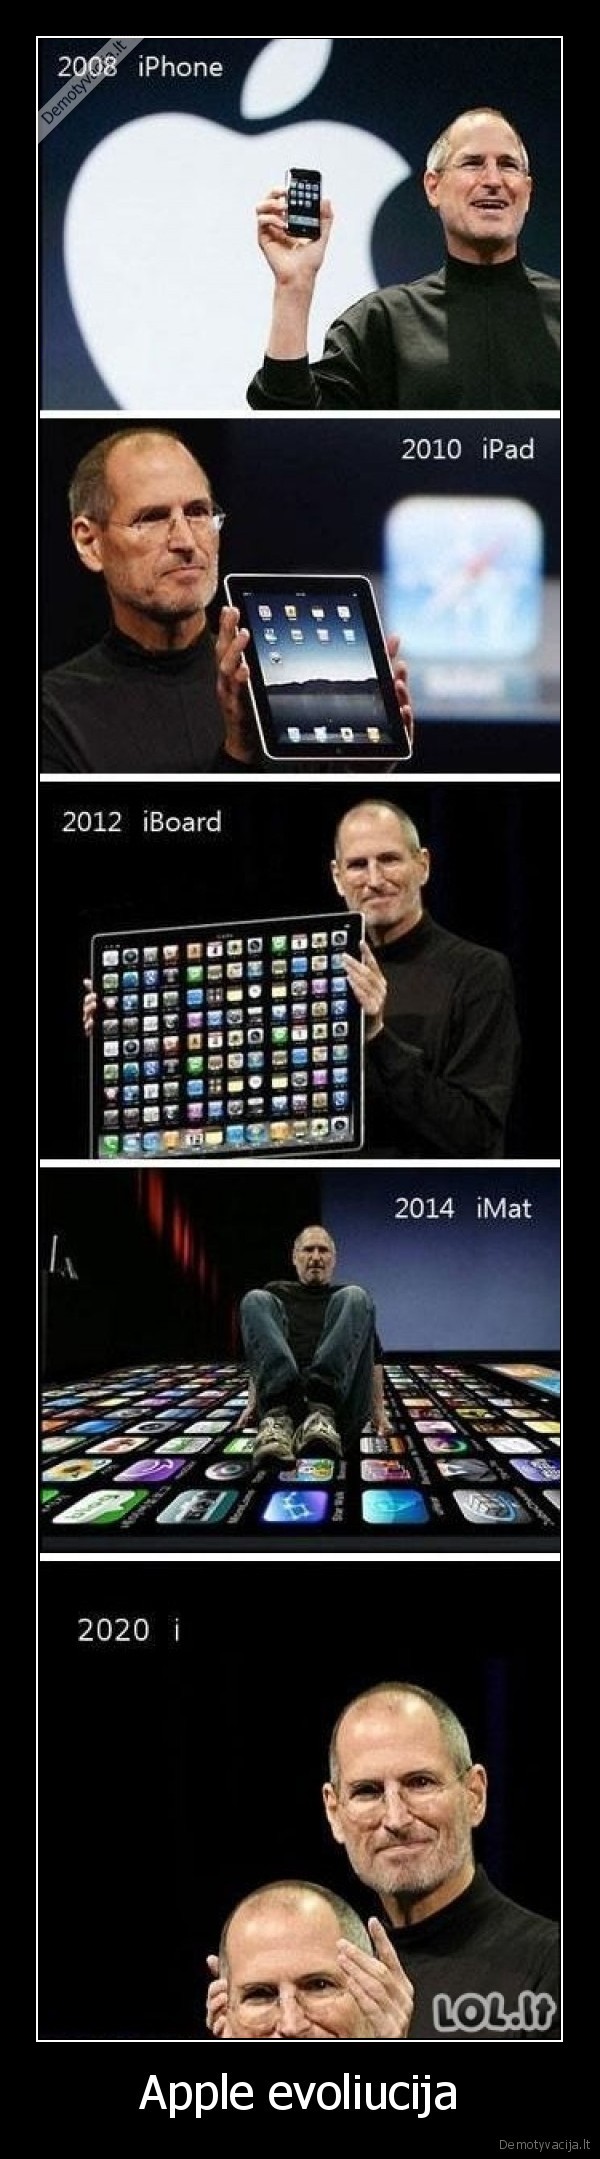 Apple evoliucija